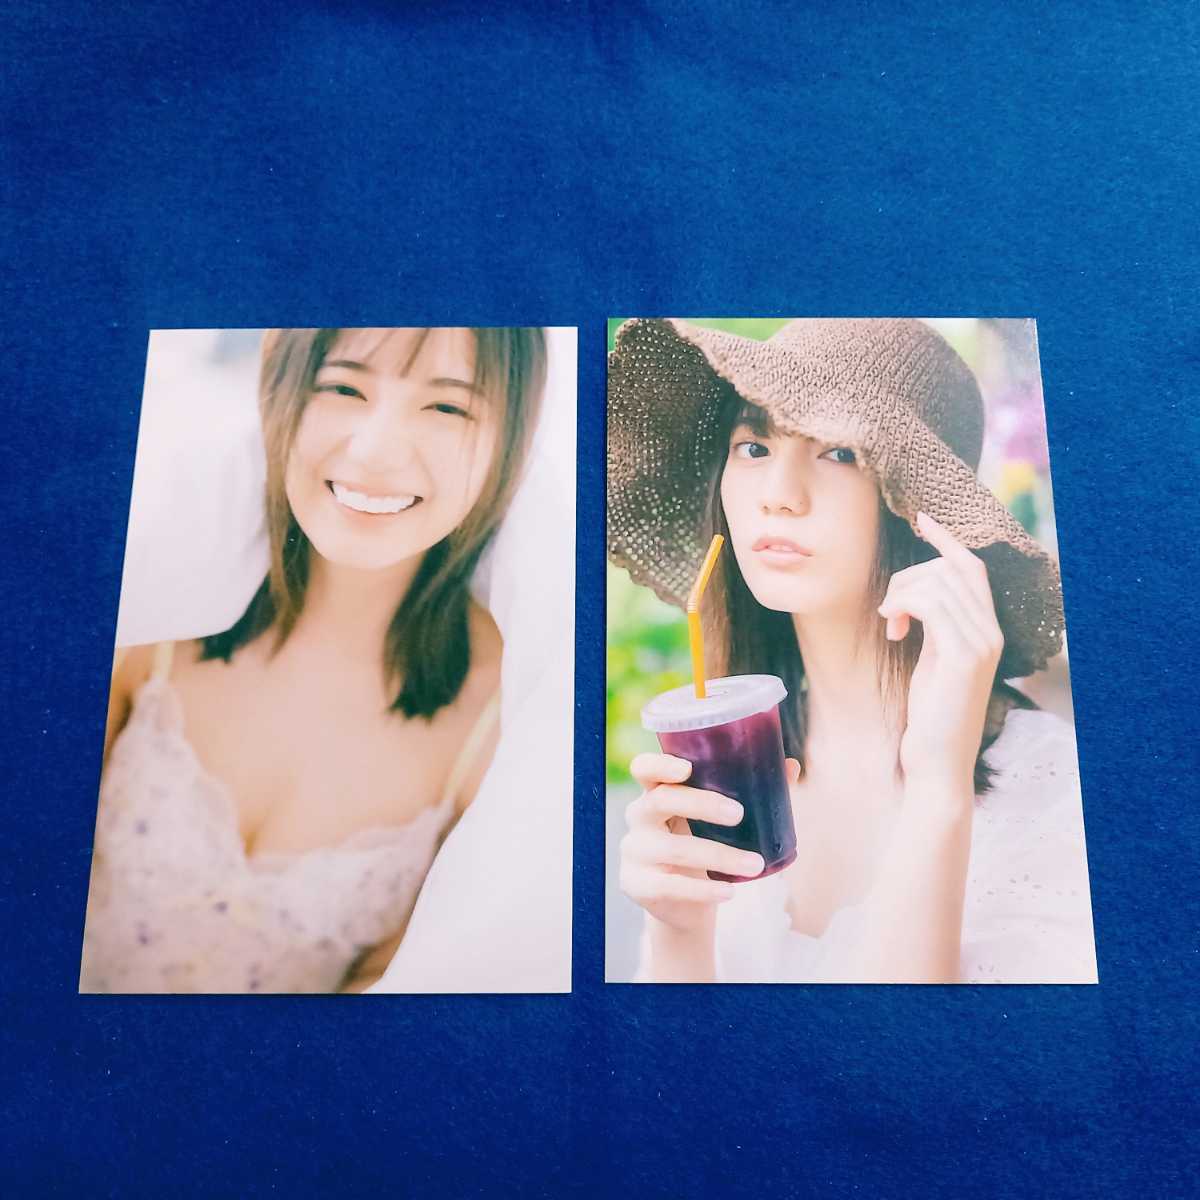 नाओ कोसाका बिक्री के लिए नहीं है पोस्टकार्ड 2 फोटो कलेक्शन बोनस हिनाताजाका46 सत्रह एक्सक्लूसिव मॉडल आइडल का सेट [ट्रैकिंग नंबर के साथ बंडल किया जा सकता है], प्रतिभा का माल, अन्य